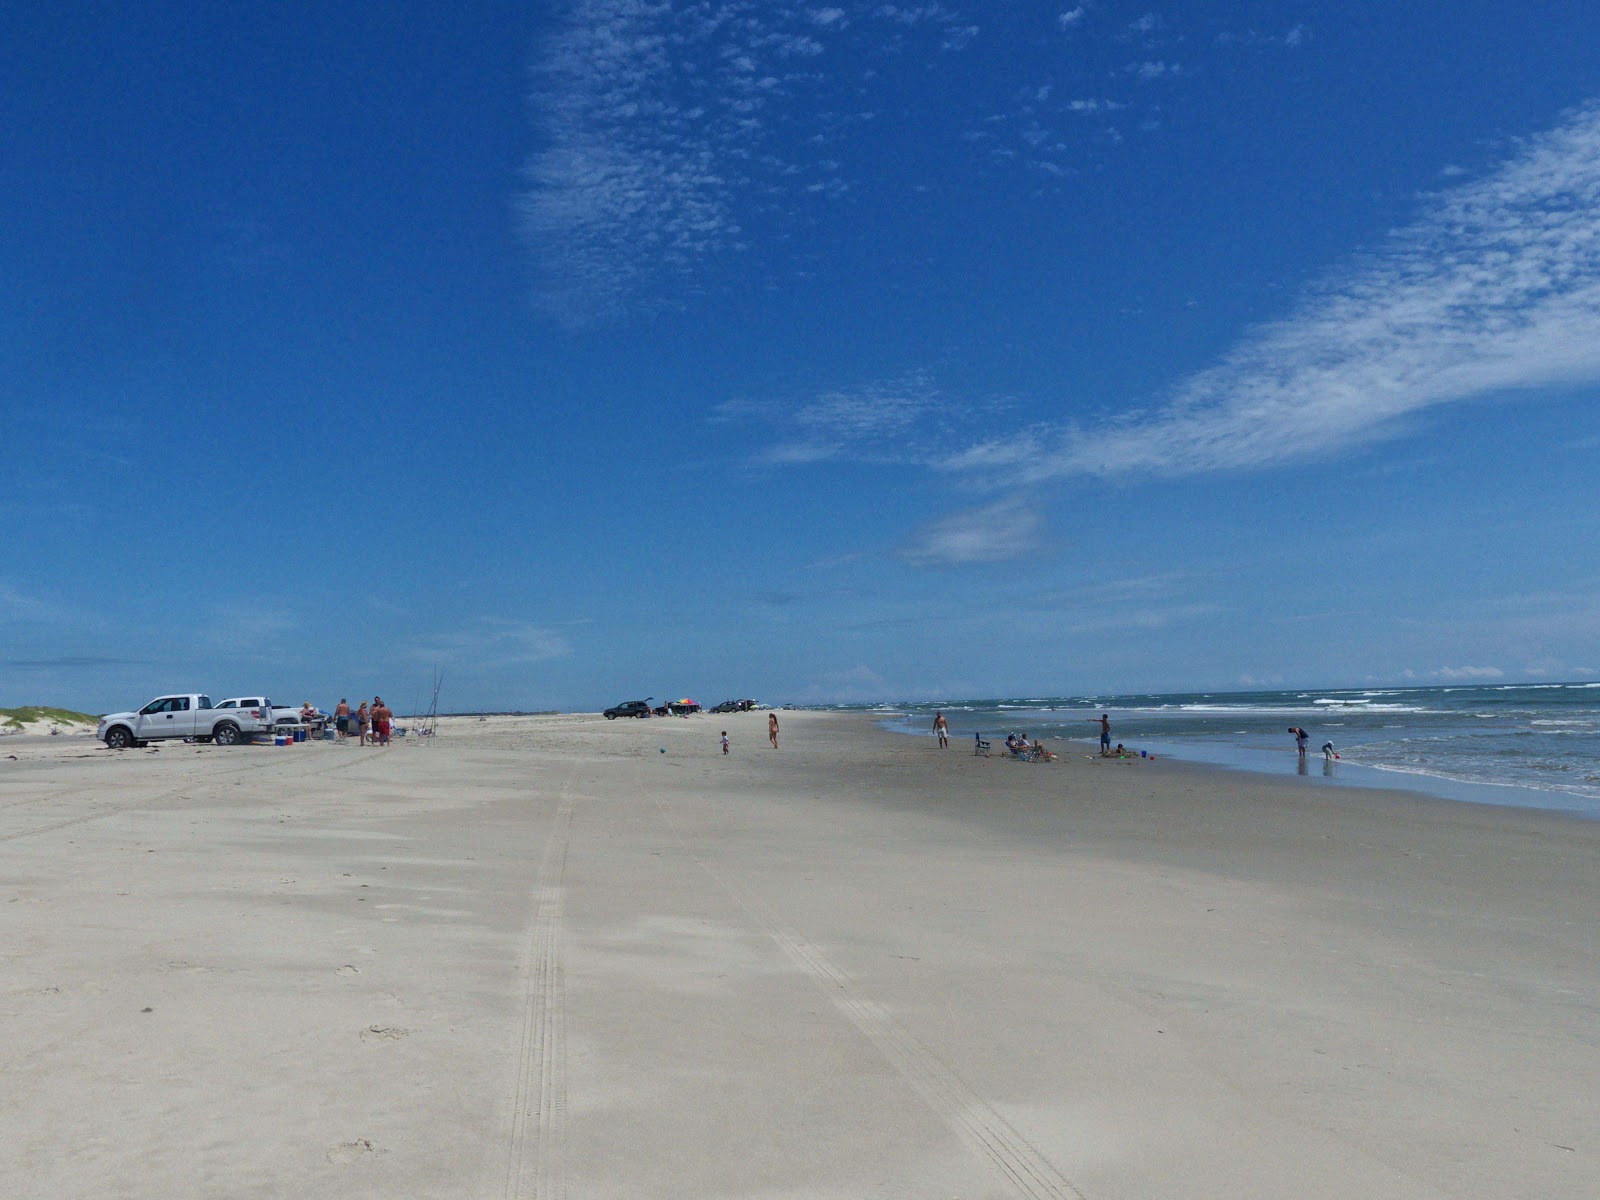 Zdjęcie Ocracoke beach III z powierzchnią jasny piasek